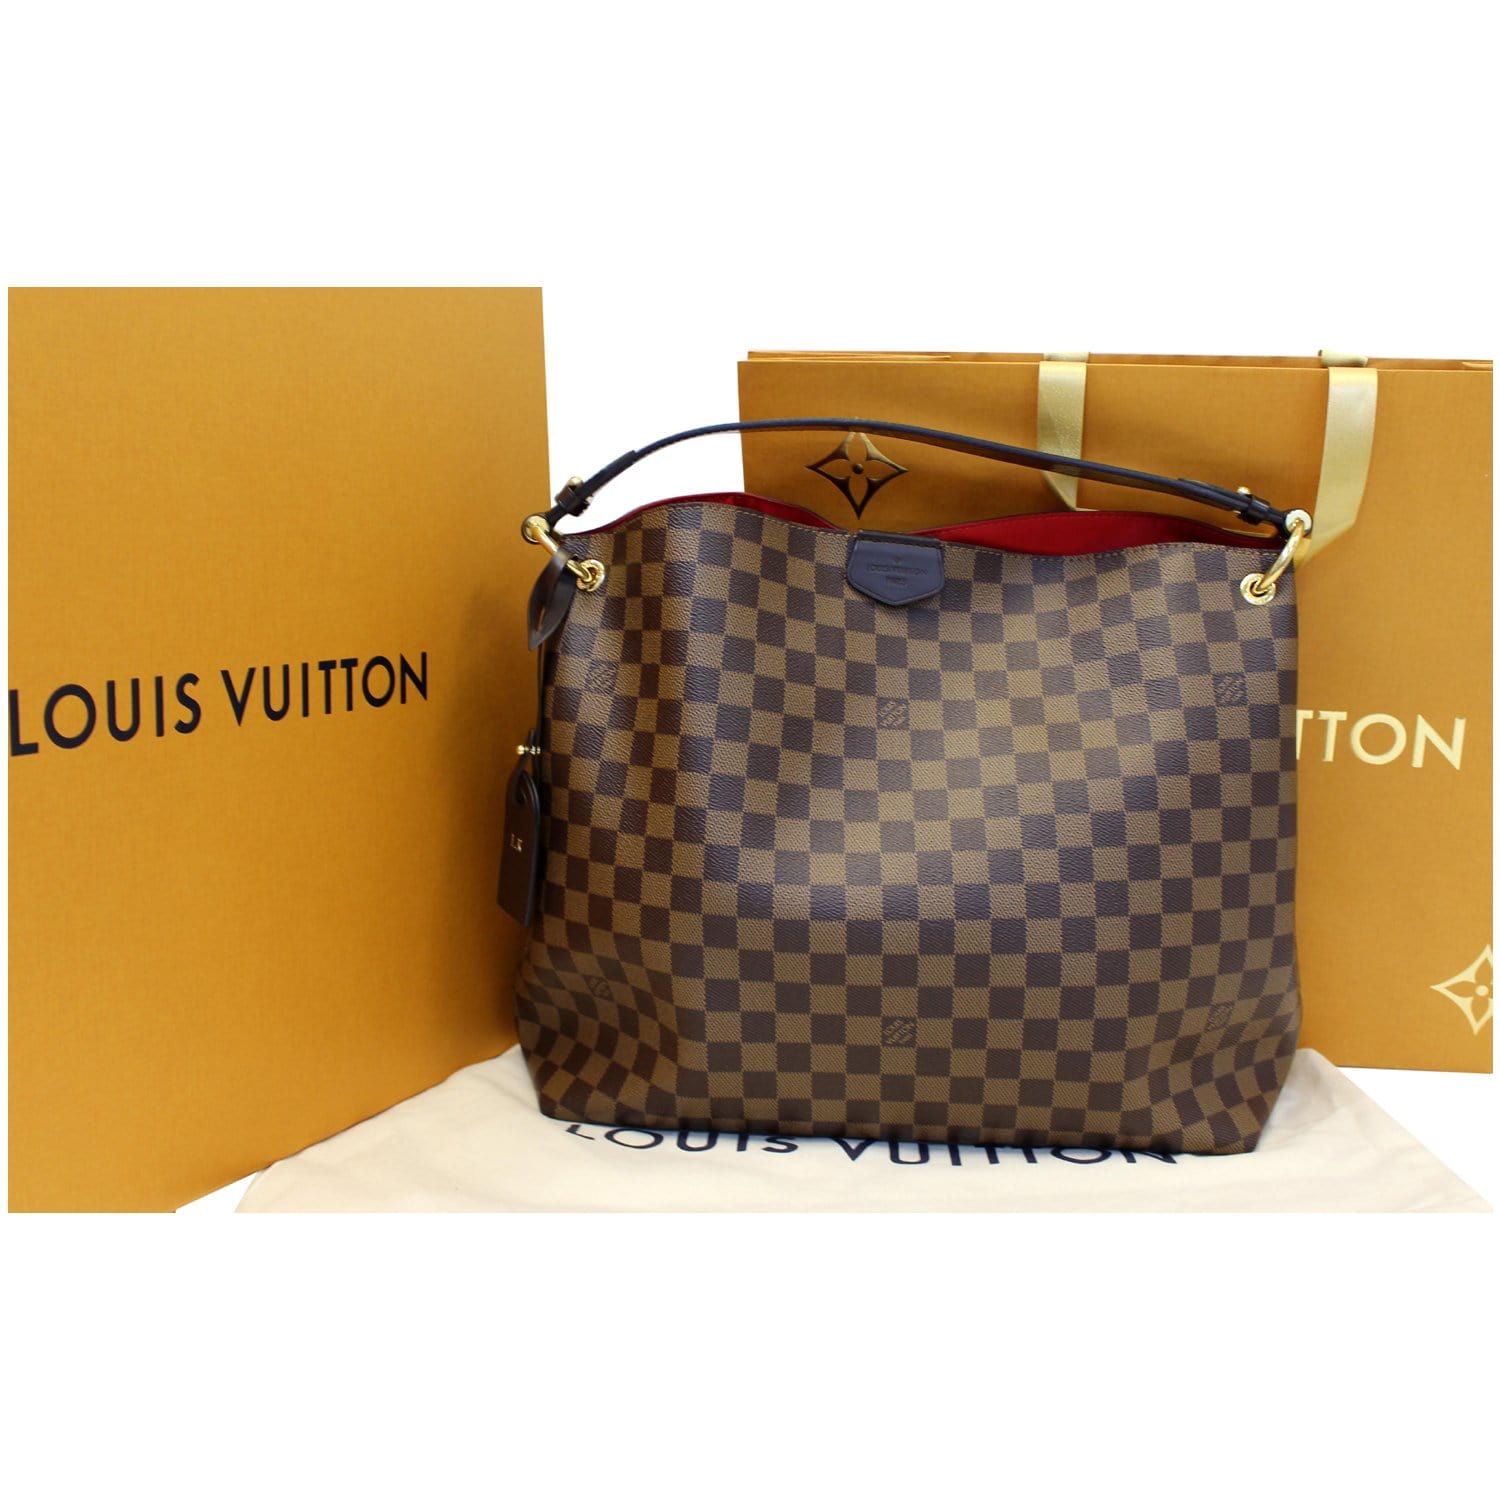 💎✨Authentic✨💎 Louis Vuitton Delightful MM Damier Ebene